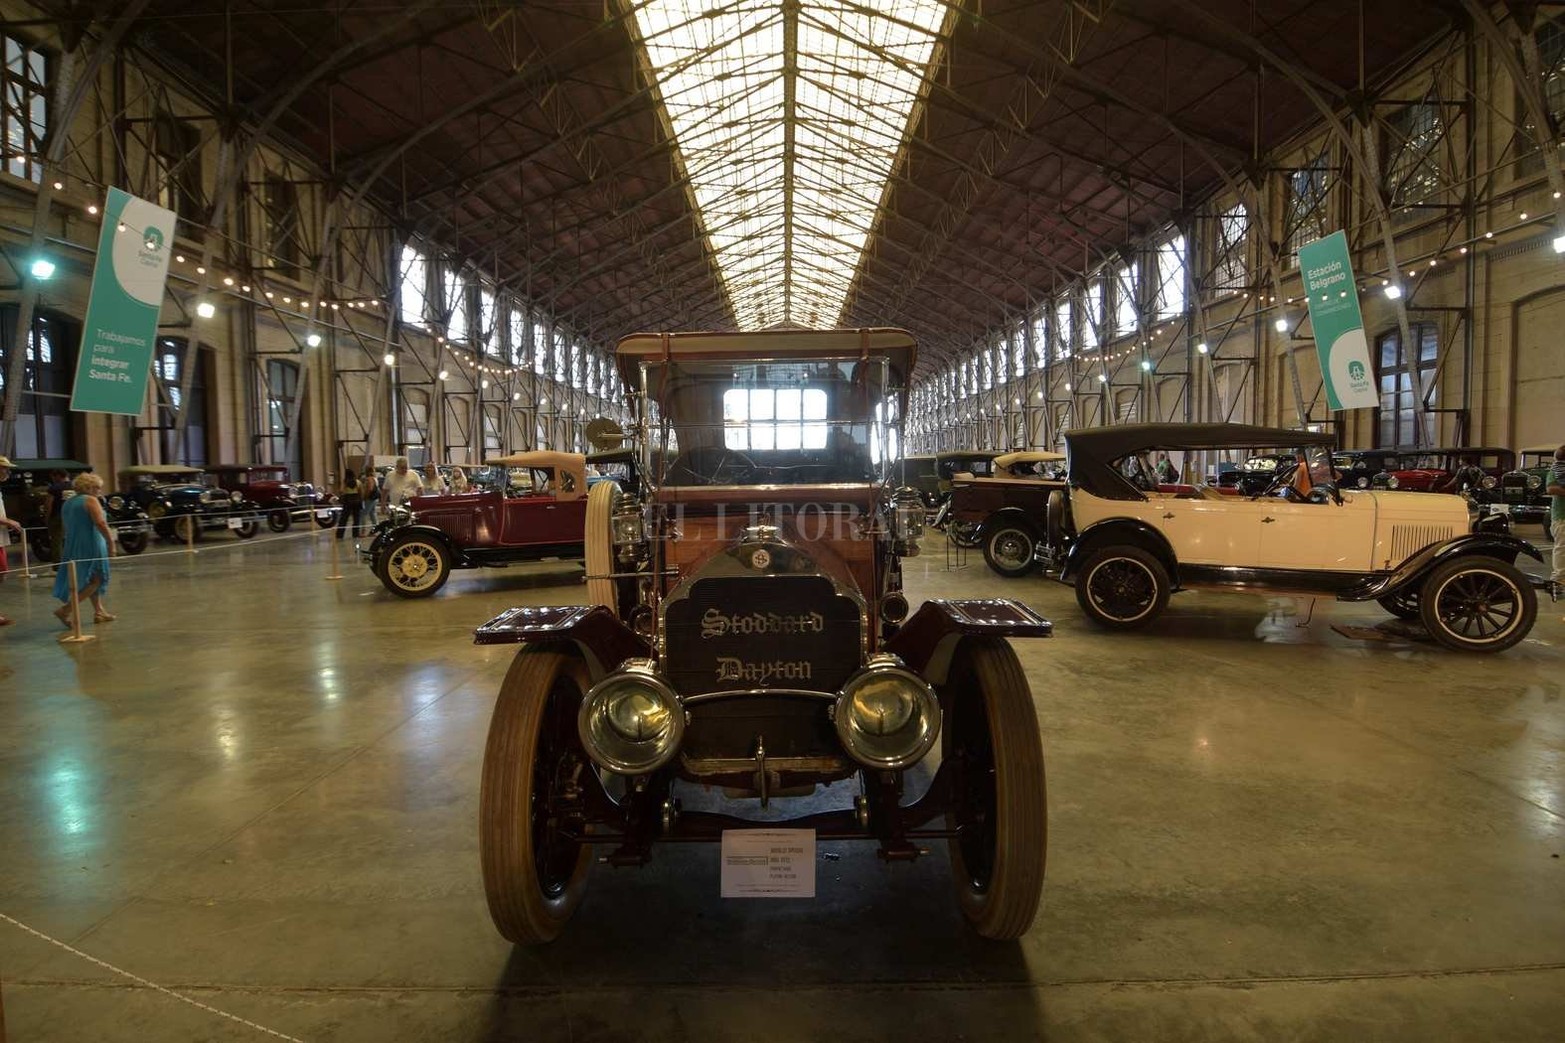 Una exposición de autos antiguos hizo lucir con "encanto retro" a la Estación Belgrano.